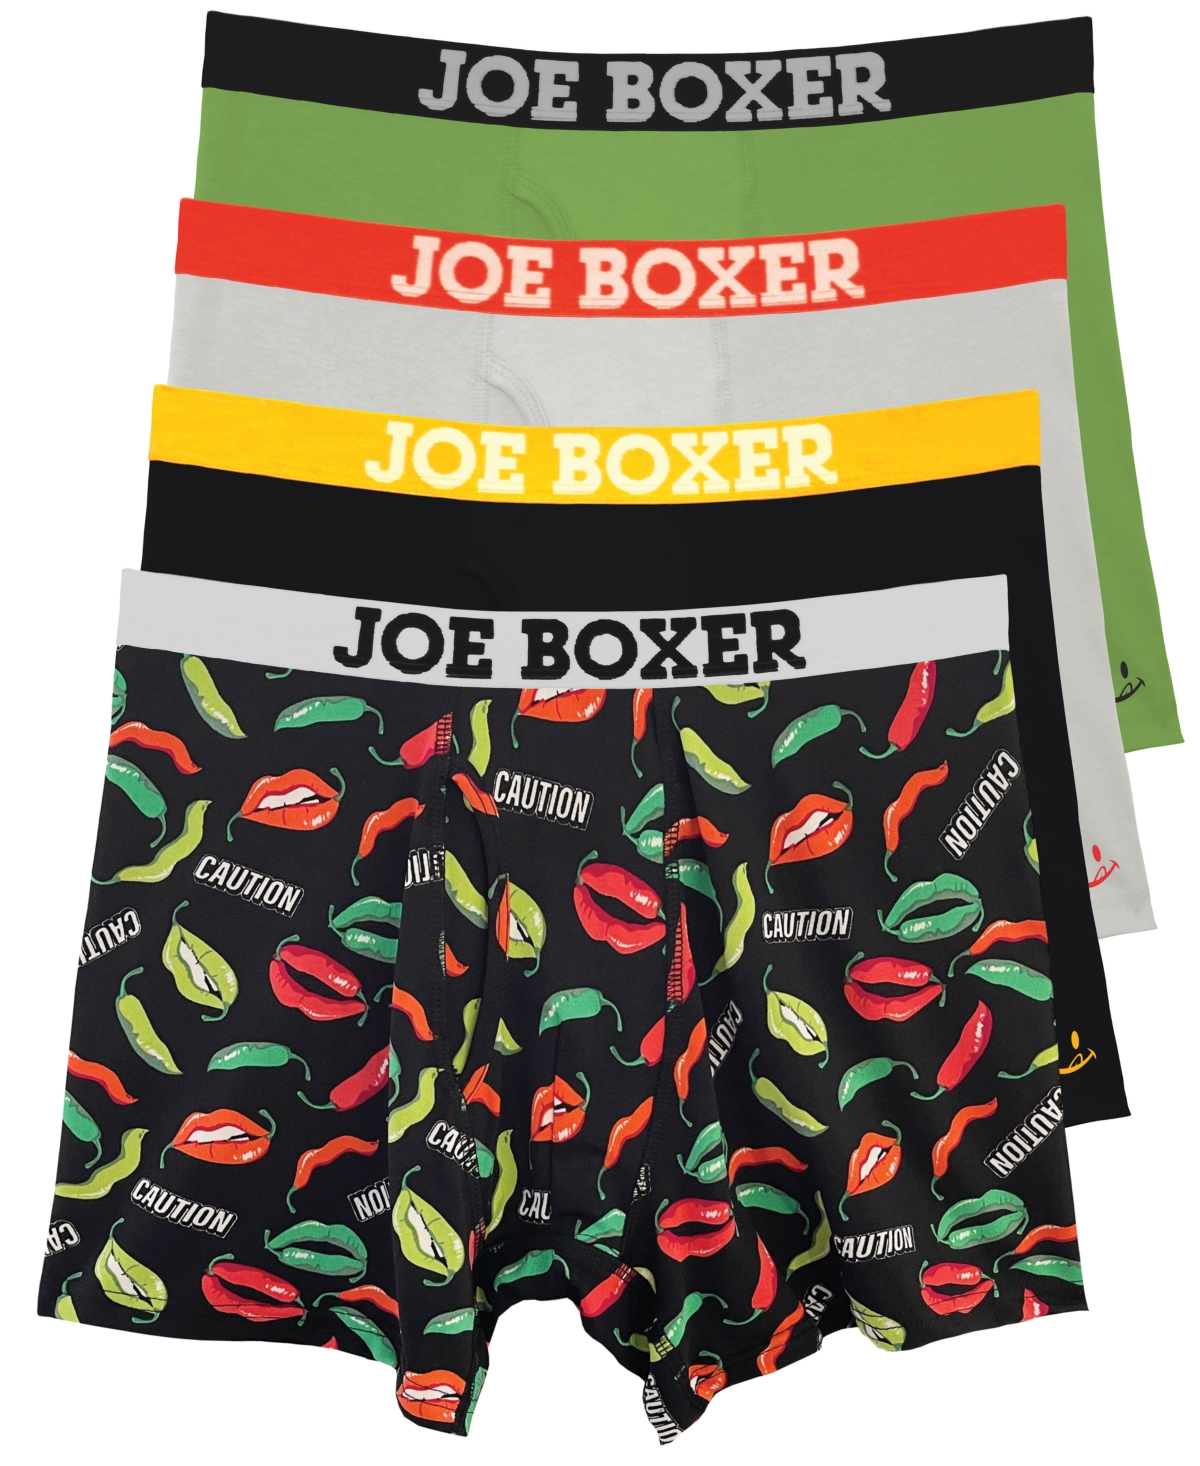 JOE BOXER MEN'S CAUTION PEPPER LIPS PERFORMANCE BOXER BRIEFS, SET OF 4